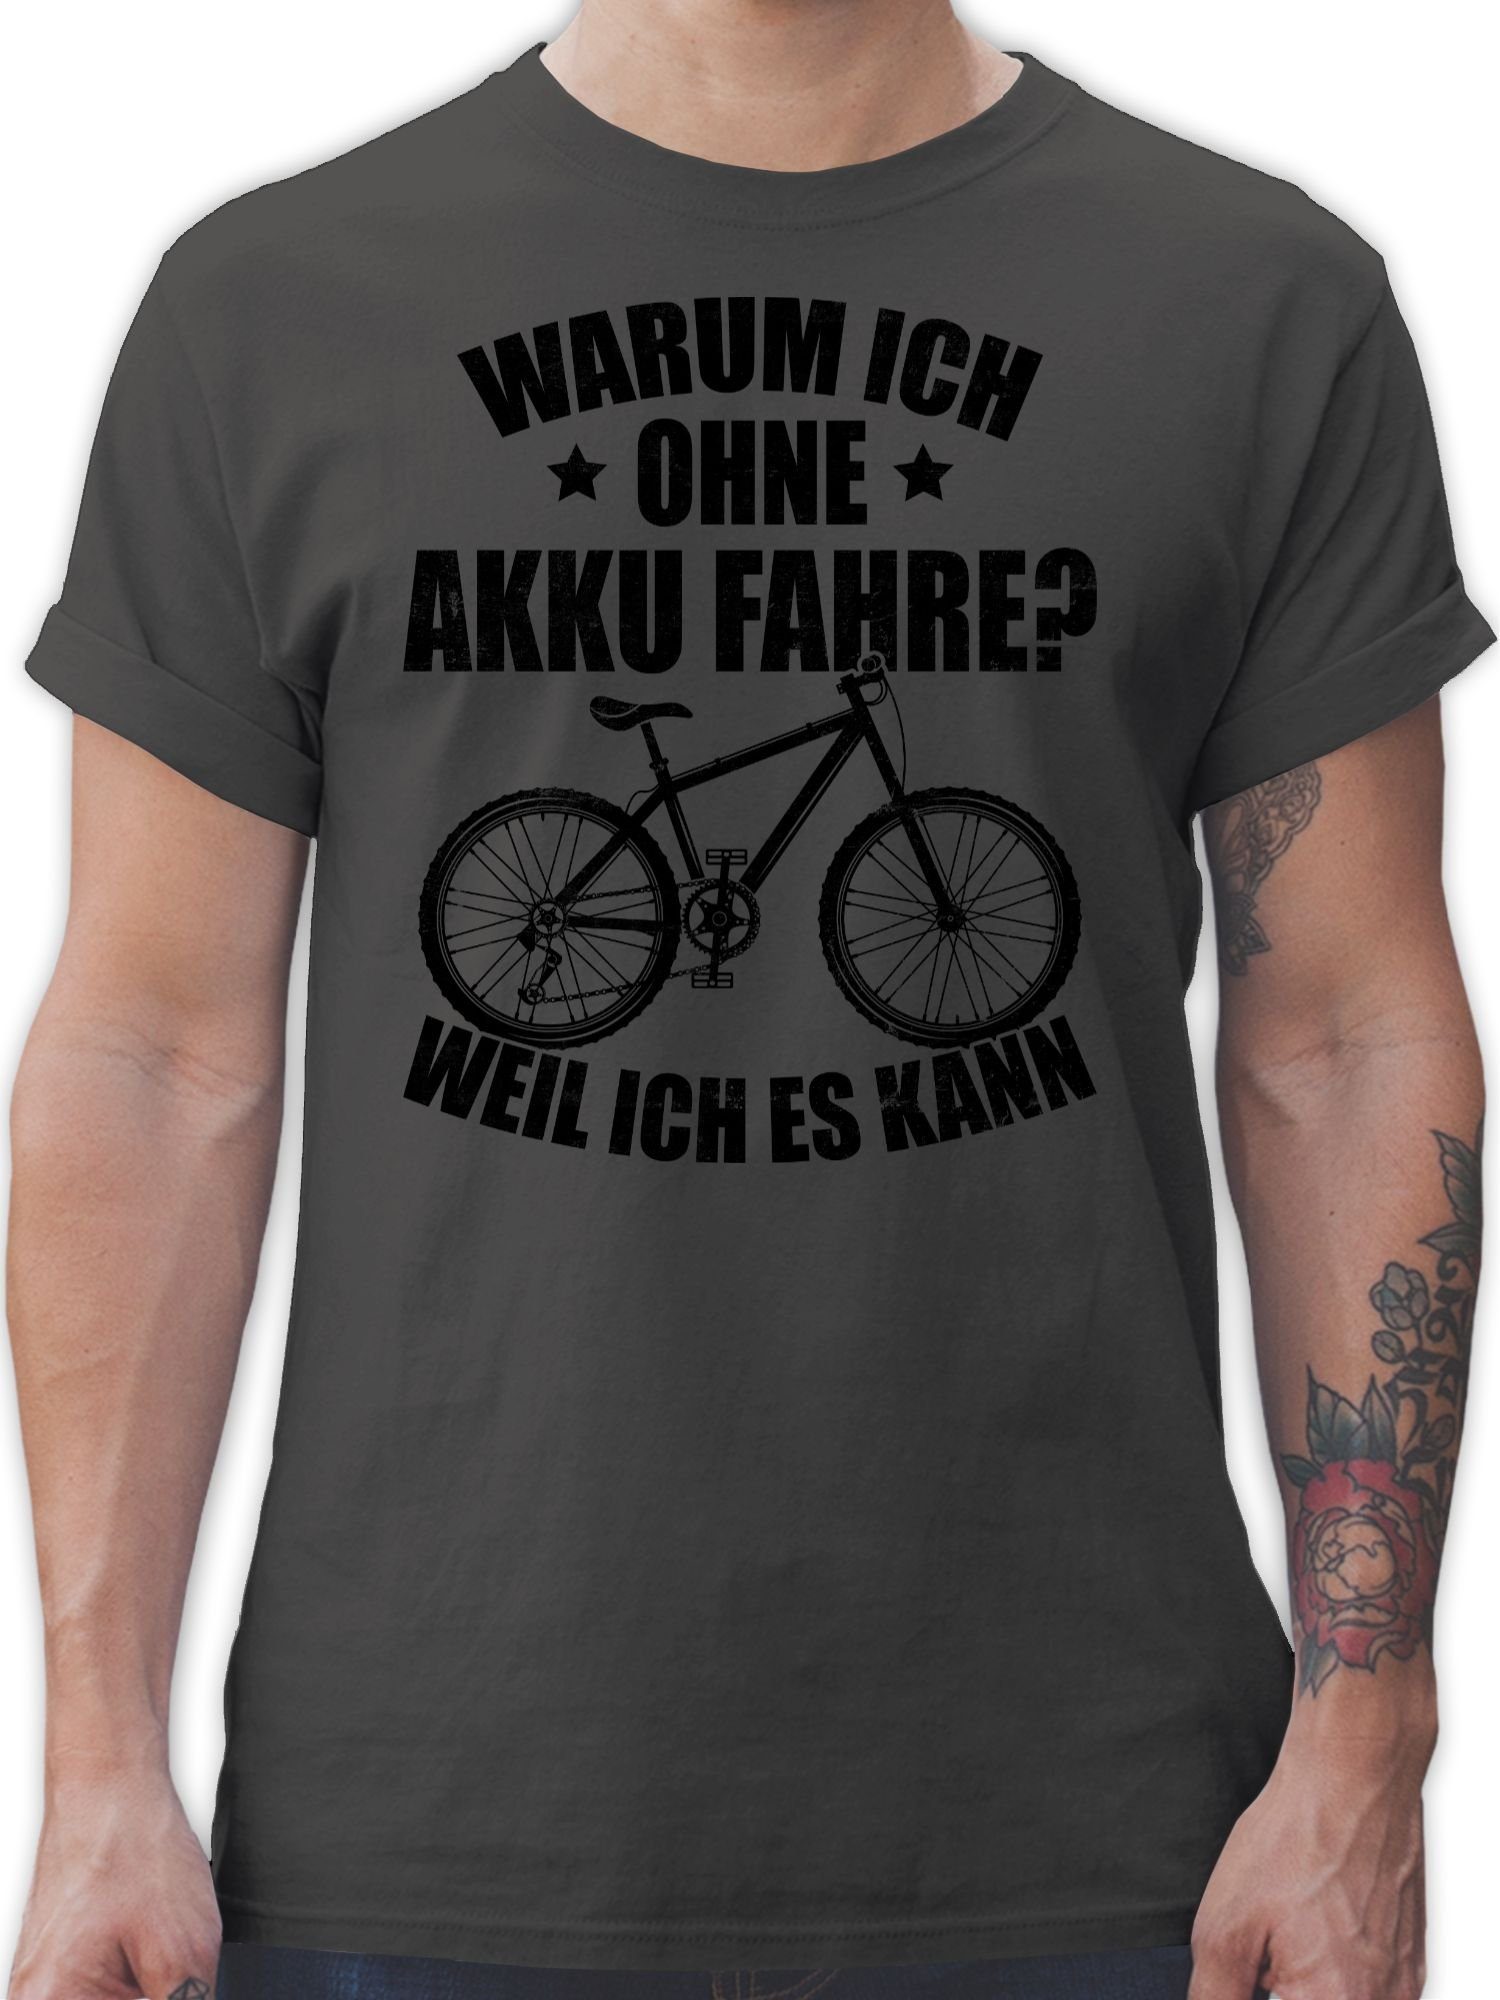 Shirtracer T-Shirt Warum ich ohne Akku fahre - weil ich es kann - schwarz Fahrrad Bekleidung Radsport 02 Dunkelgrau